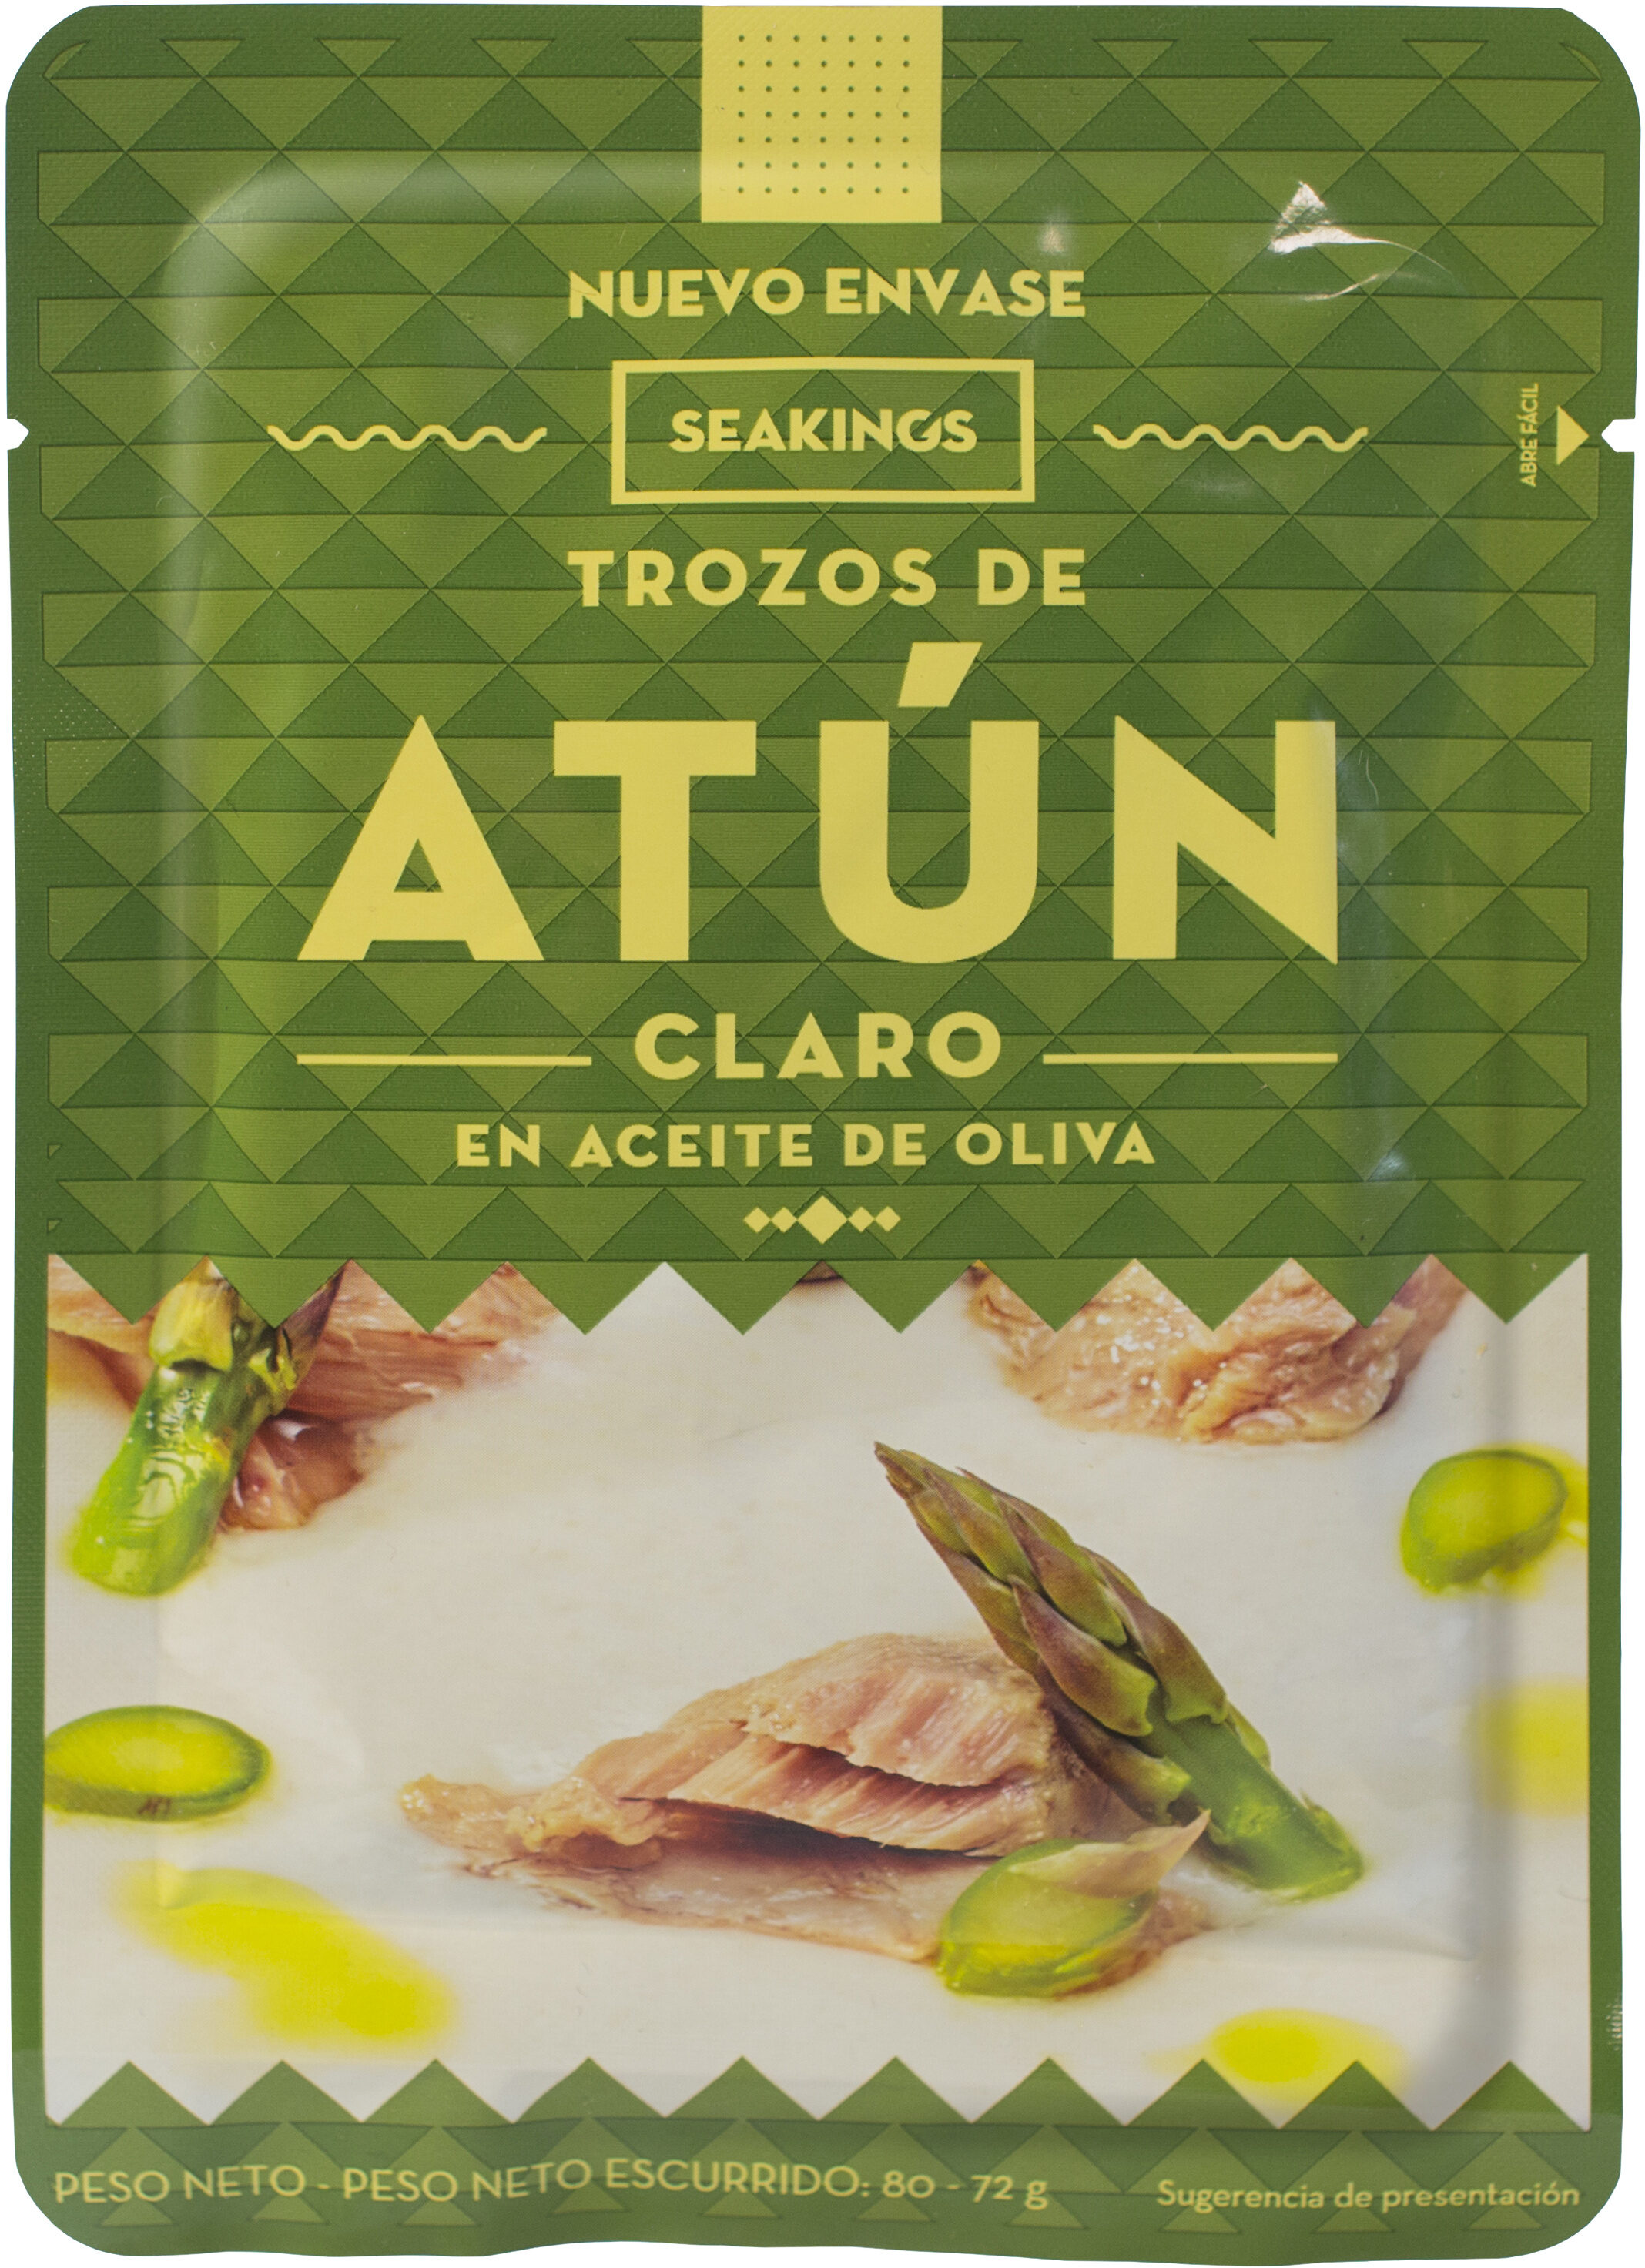 Trozo de atún claro en aceite de oliva - Información nutricional